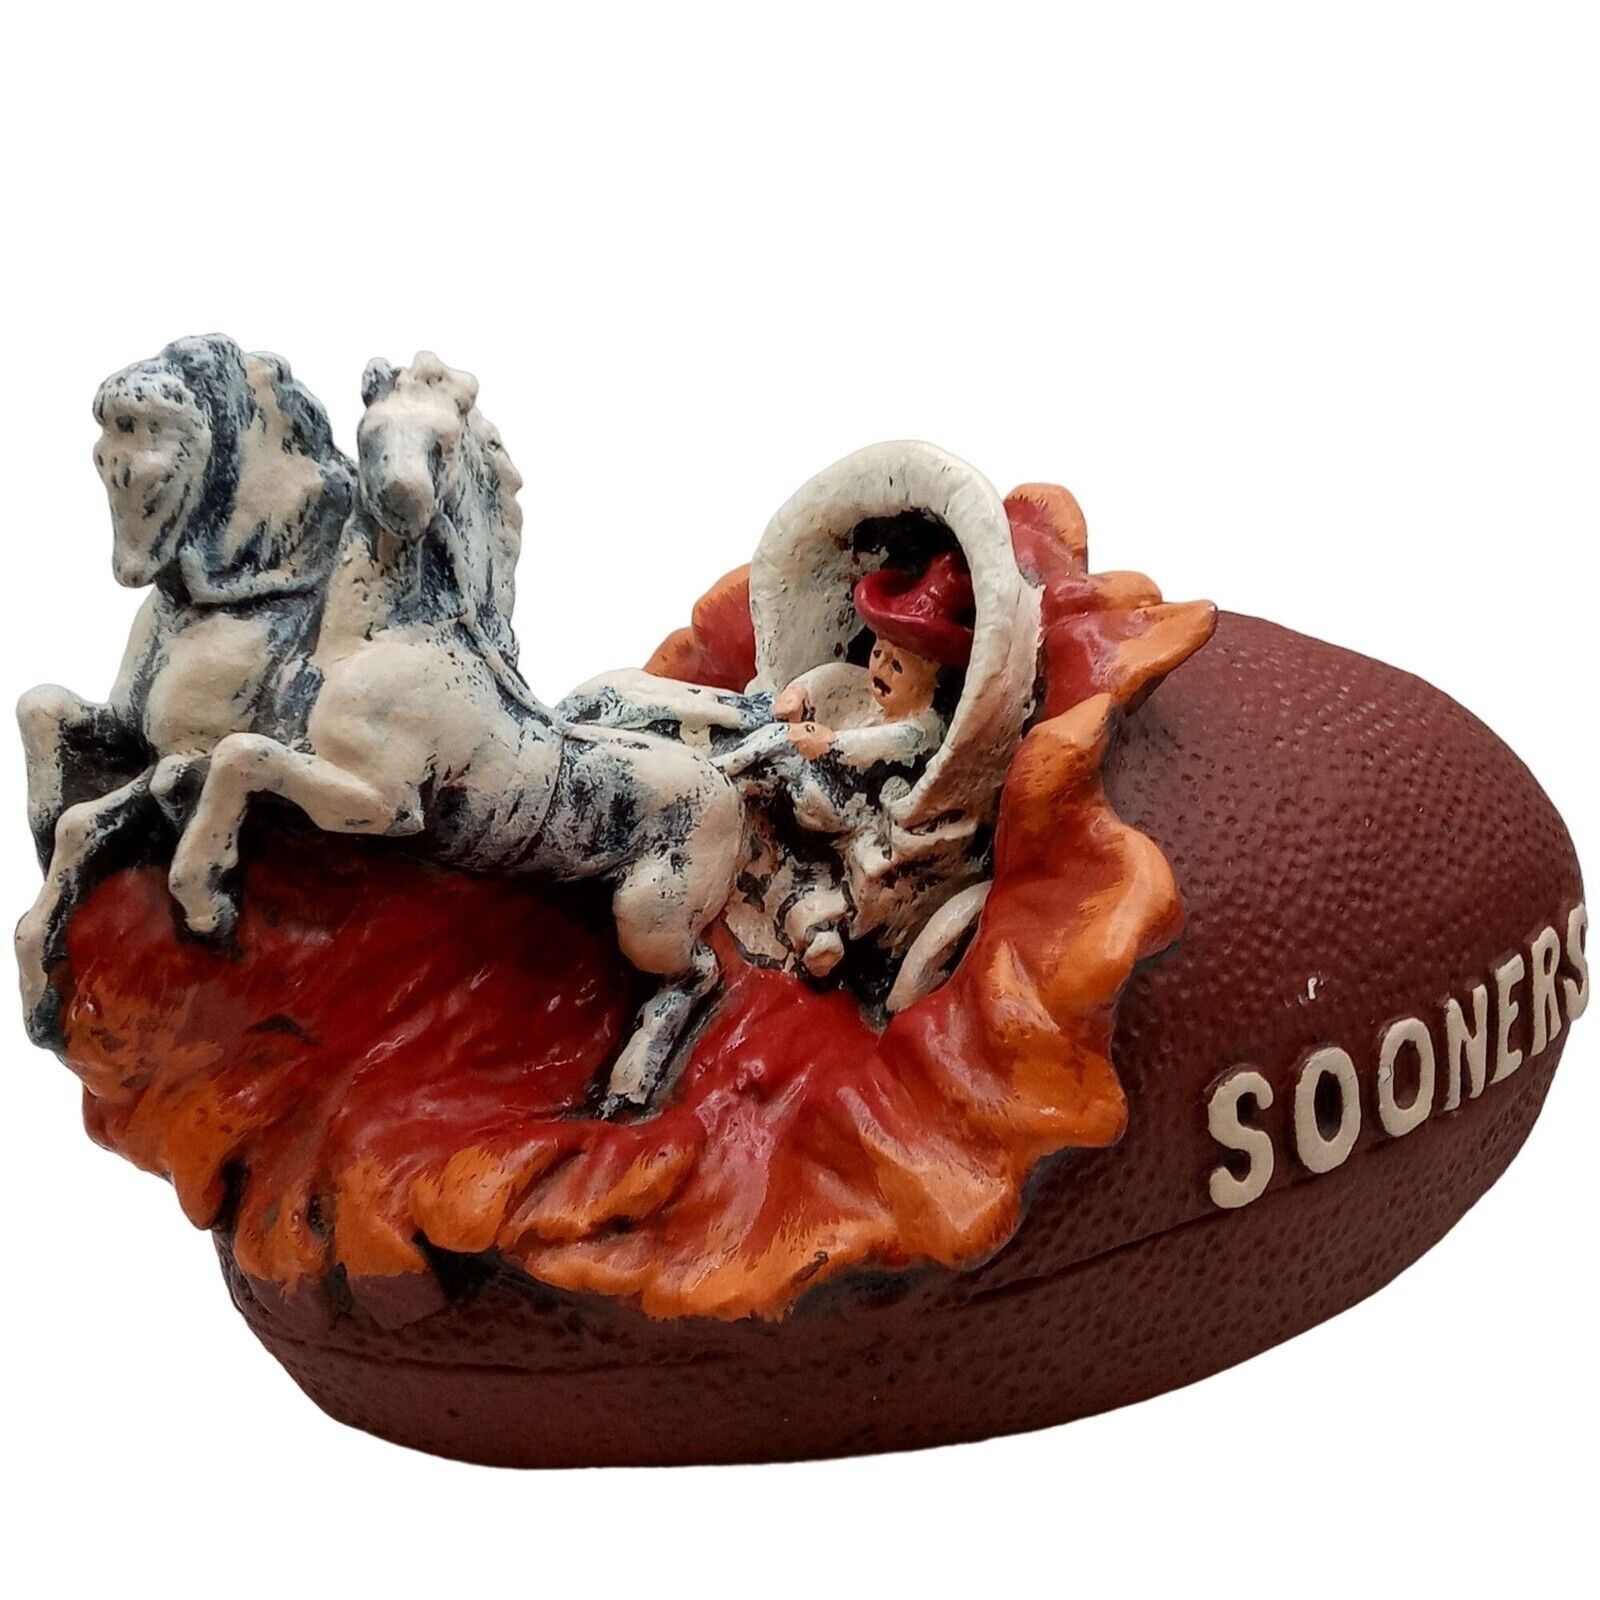 Oklahoma Football Sculpture Vintage OOAK Statue Sports Horse OK Unusual Oddity